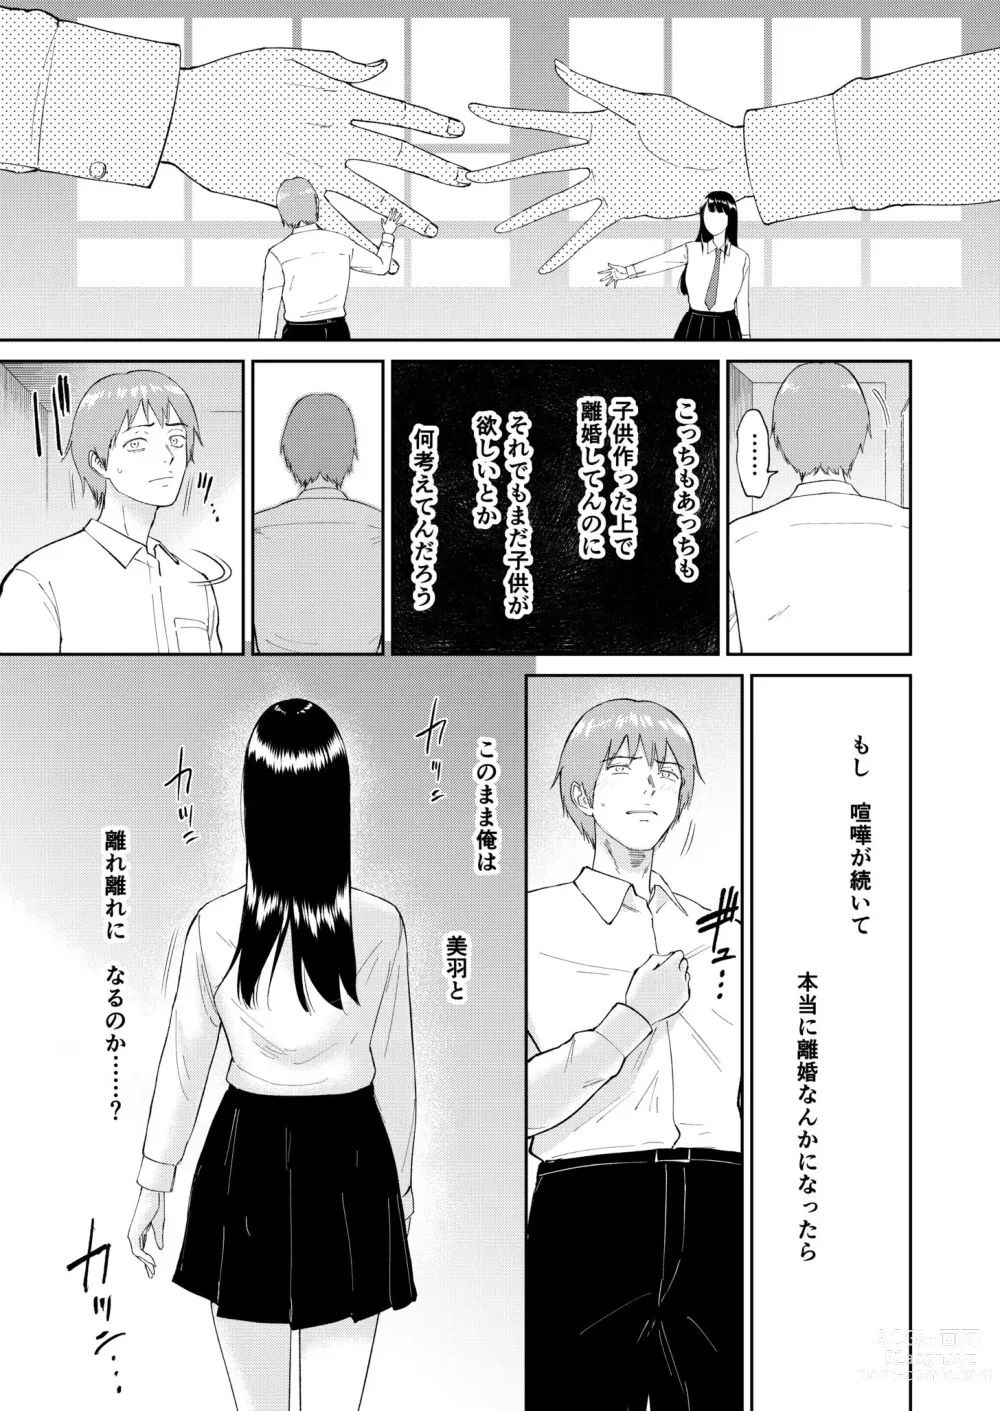 Page 7 of manga Iinarikko 5